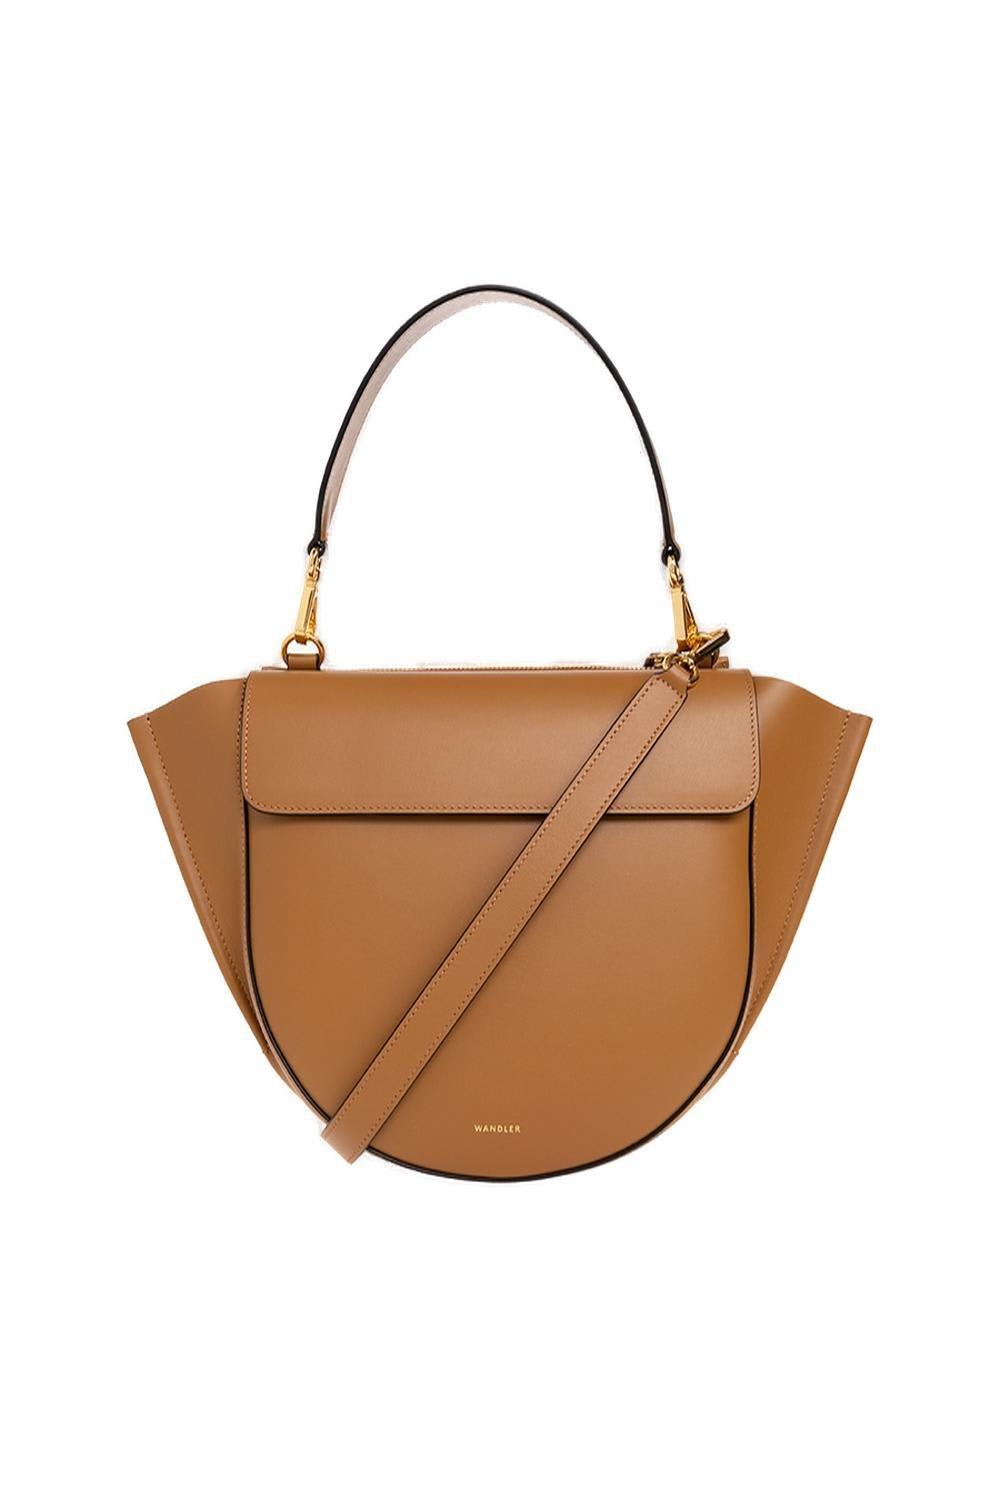 Wandler Hortensia Medium Top Handle Bag